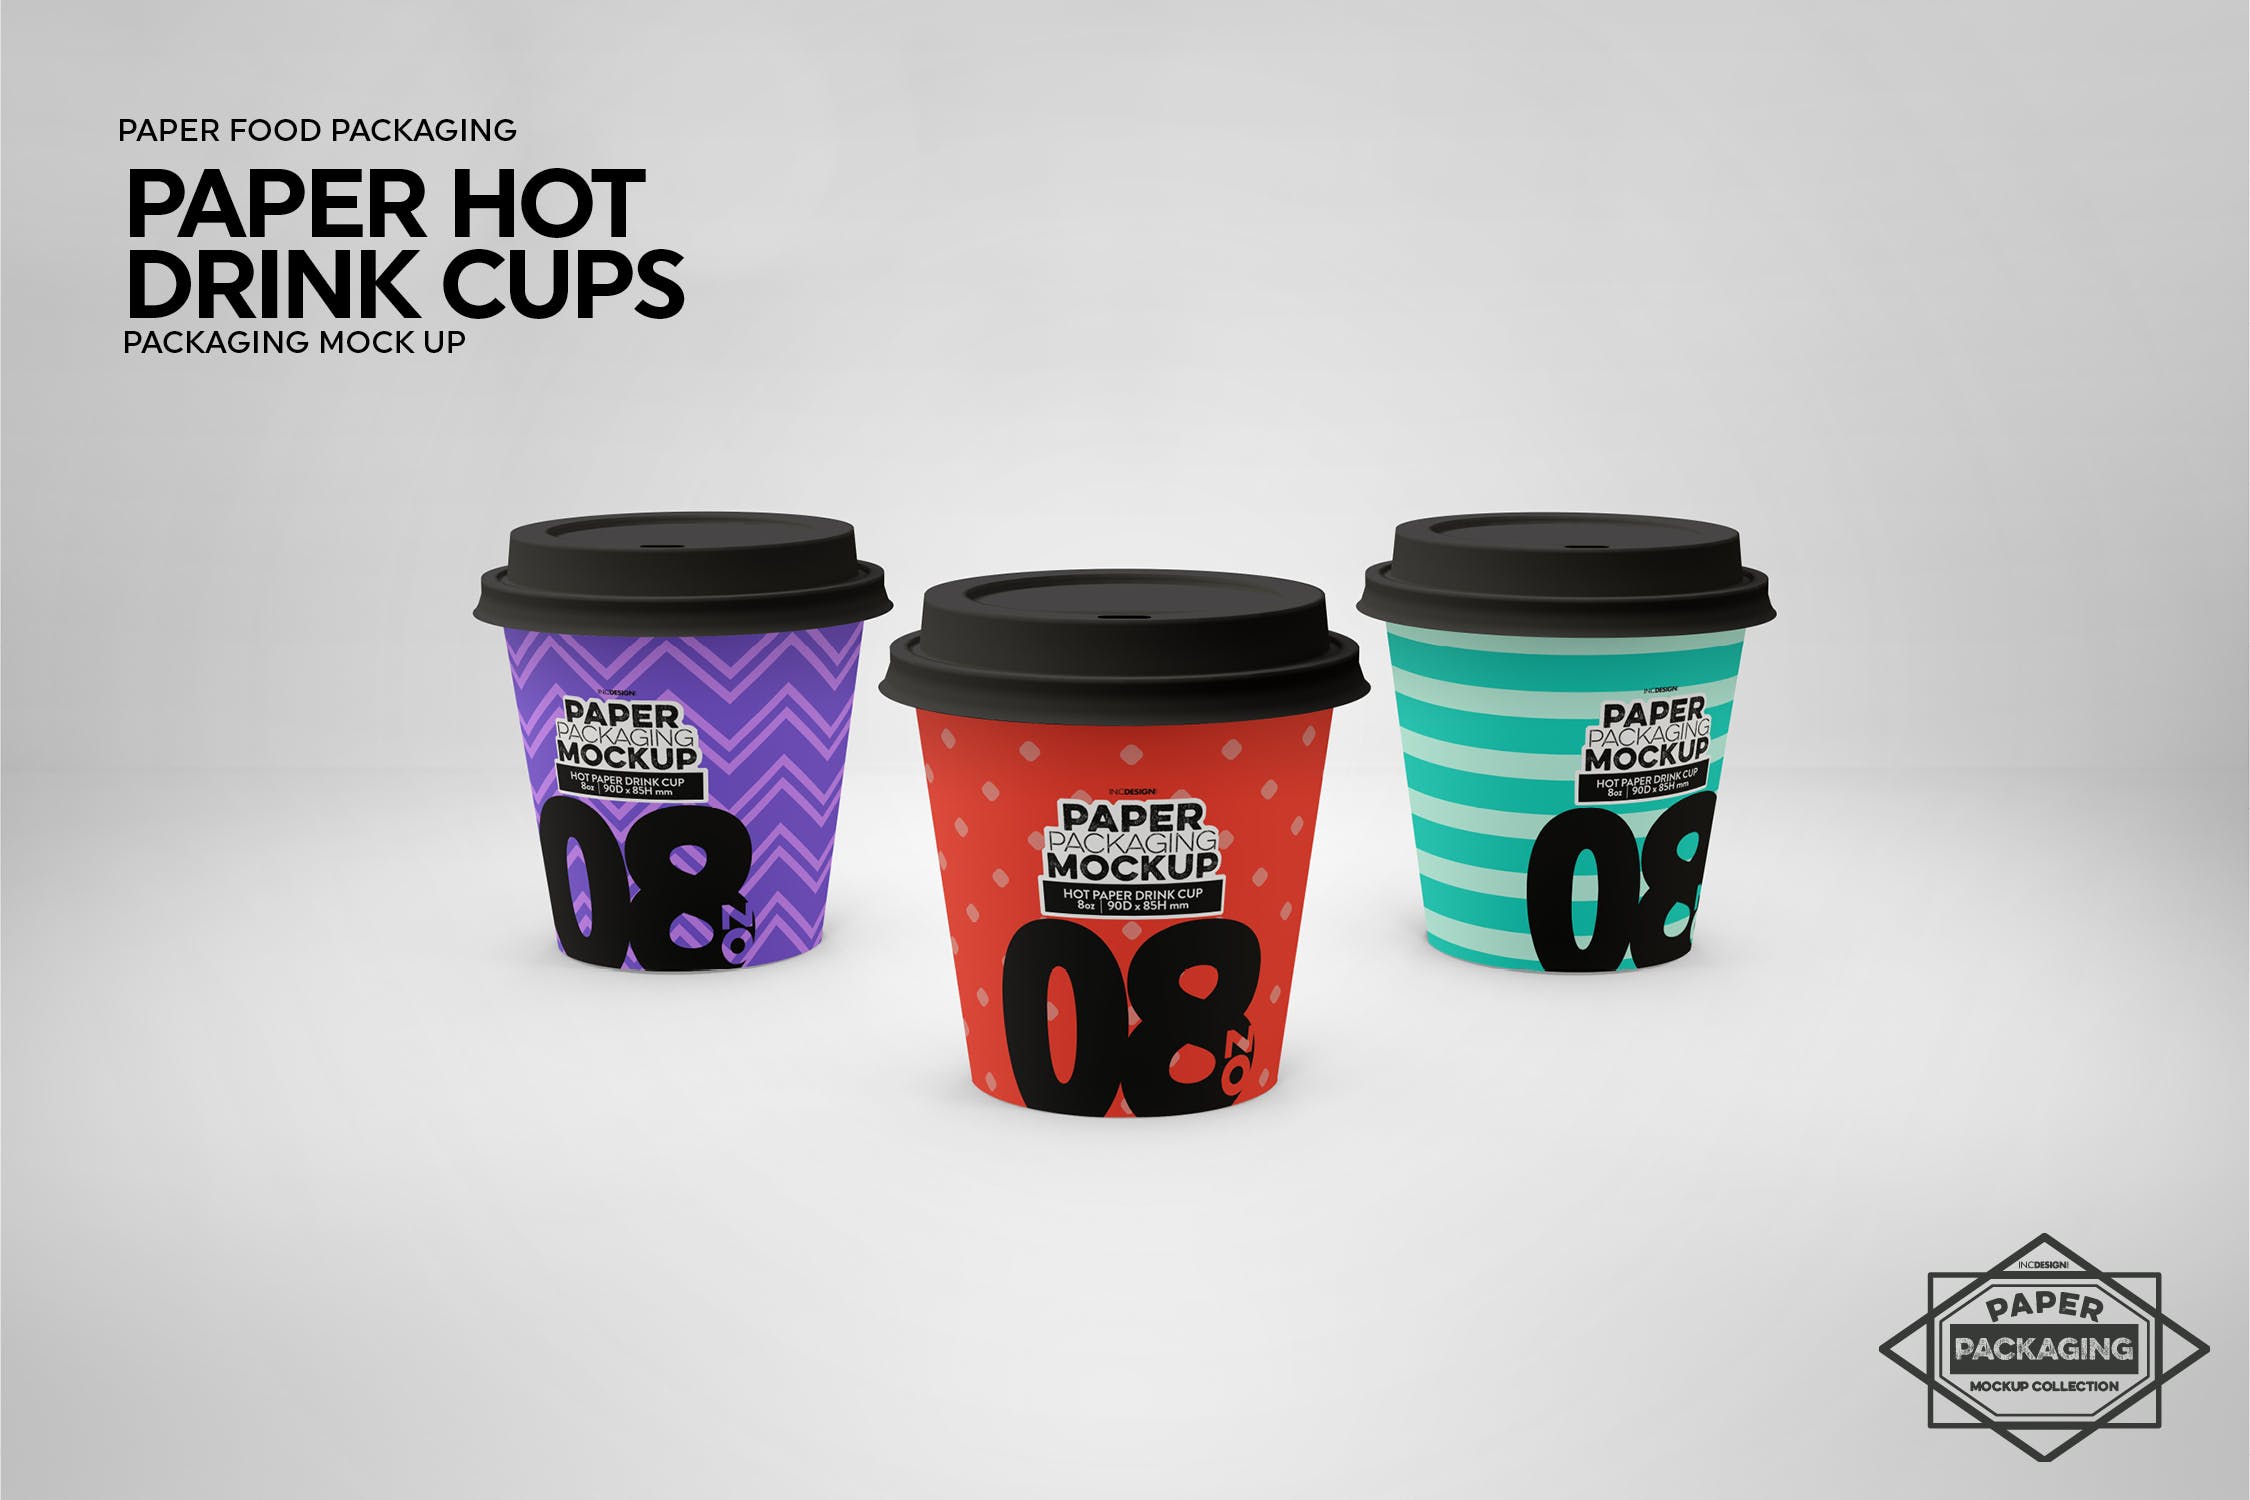 热饮一次性纸杯外观设计非凡图库精选 Paper Hot Drink Cups Packaging Mockup插图(14)